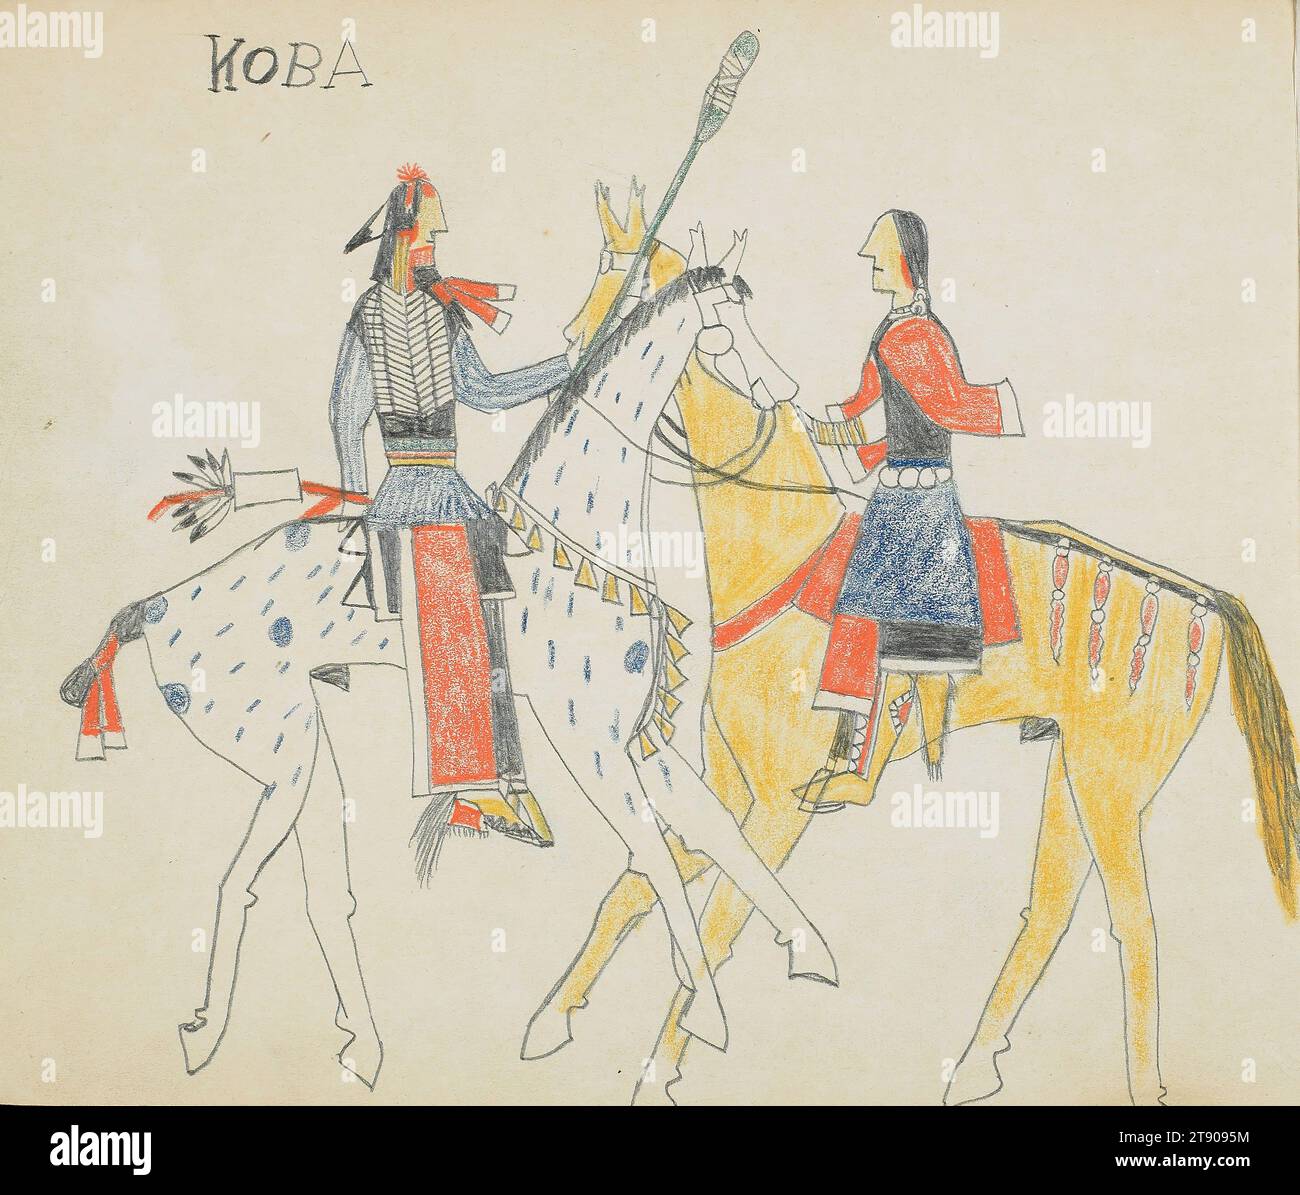 Sketchbook, 1876, Koba, Ka'igwu (Kiowa), Ka'igwu (Kiowa), 1848 - 1880, 6 3/4 x 8 3/8 x 1/8 Zoll (17,15 x 21,27 x 0,32 cm) (geschlossen), Graphit und Buntstift auf Papier, USA, 19. Jahrhundert, Eine Jahrtausende alte Kunstform, Plains Indian Zeichnungen erscheinen auf Felsen, Fellen, Musselin, Tuch und Papier. Zeichnungen können eine Vielzahl von Themen darstellen, darunter große Leistungen einzelner Männer, wichtige historische Ereignisse und zeremonielles und tägliches Leben auf den Plains. Der Kiowa-Künstler Koba schuf ein Skizzenbuch, als er fälschlicherweise in Fort Marion in St. inhaftiert war Augustine, Florida. Stockfoto